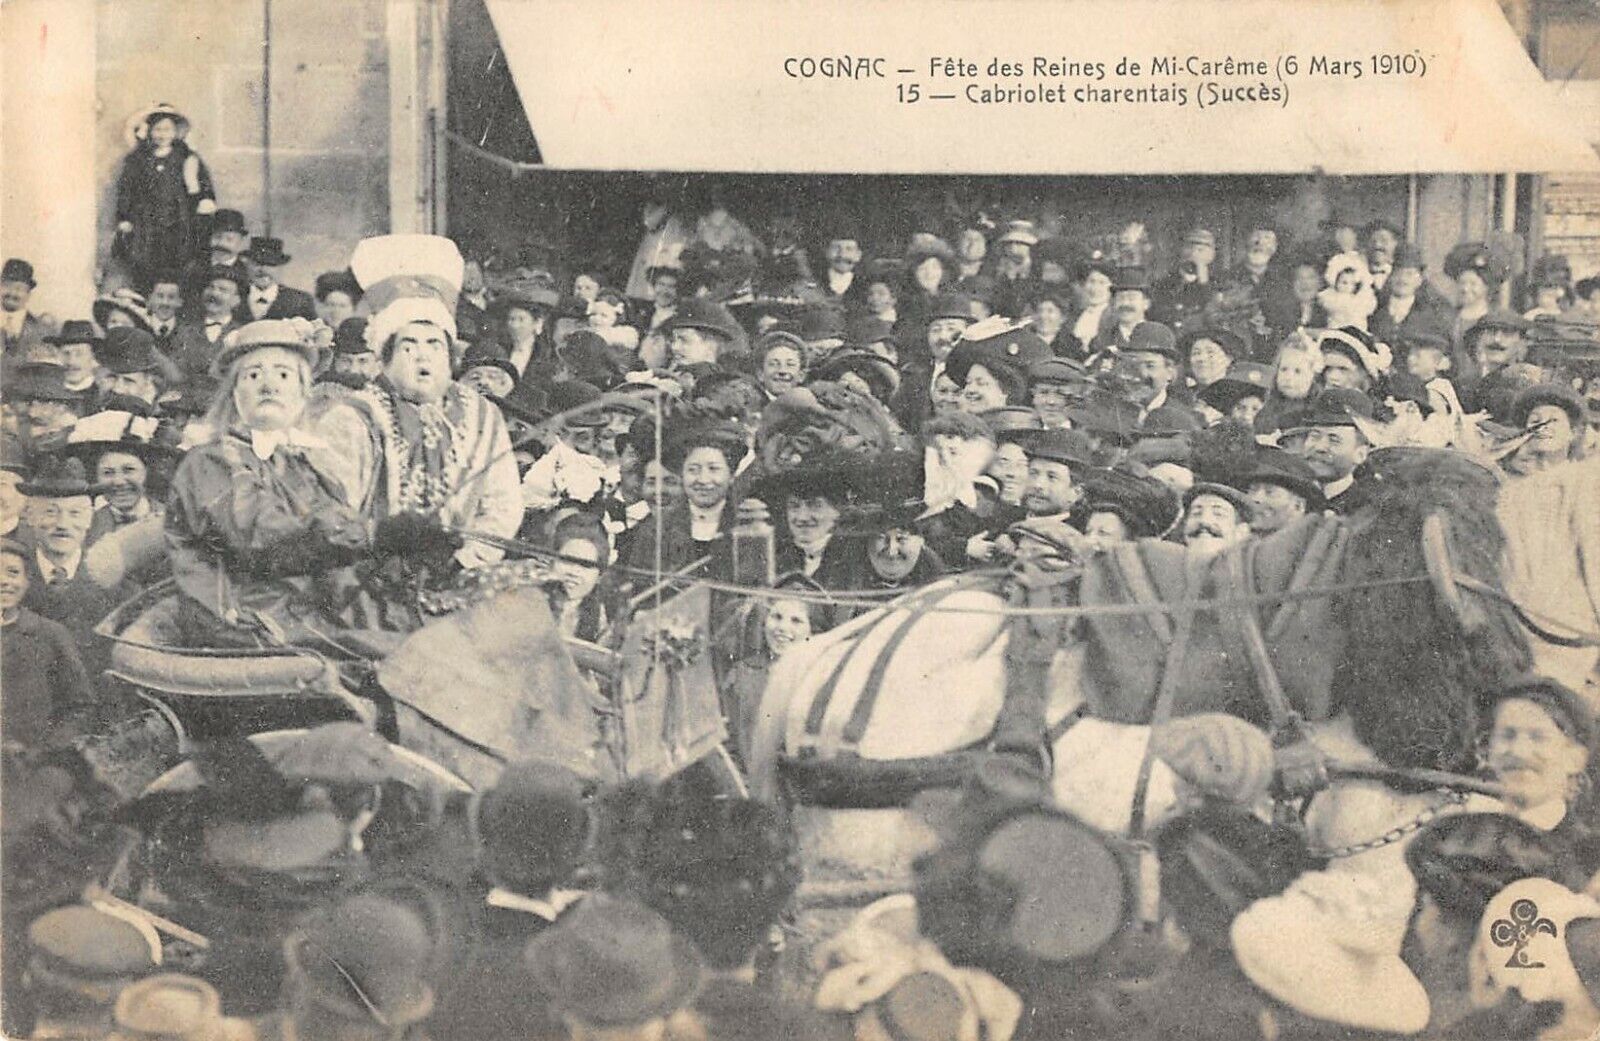 CPA 16 COGNAC FETE DES REINES DE MI CAREME 1910 CABRIOLET CHARENTAIS SUCCESS